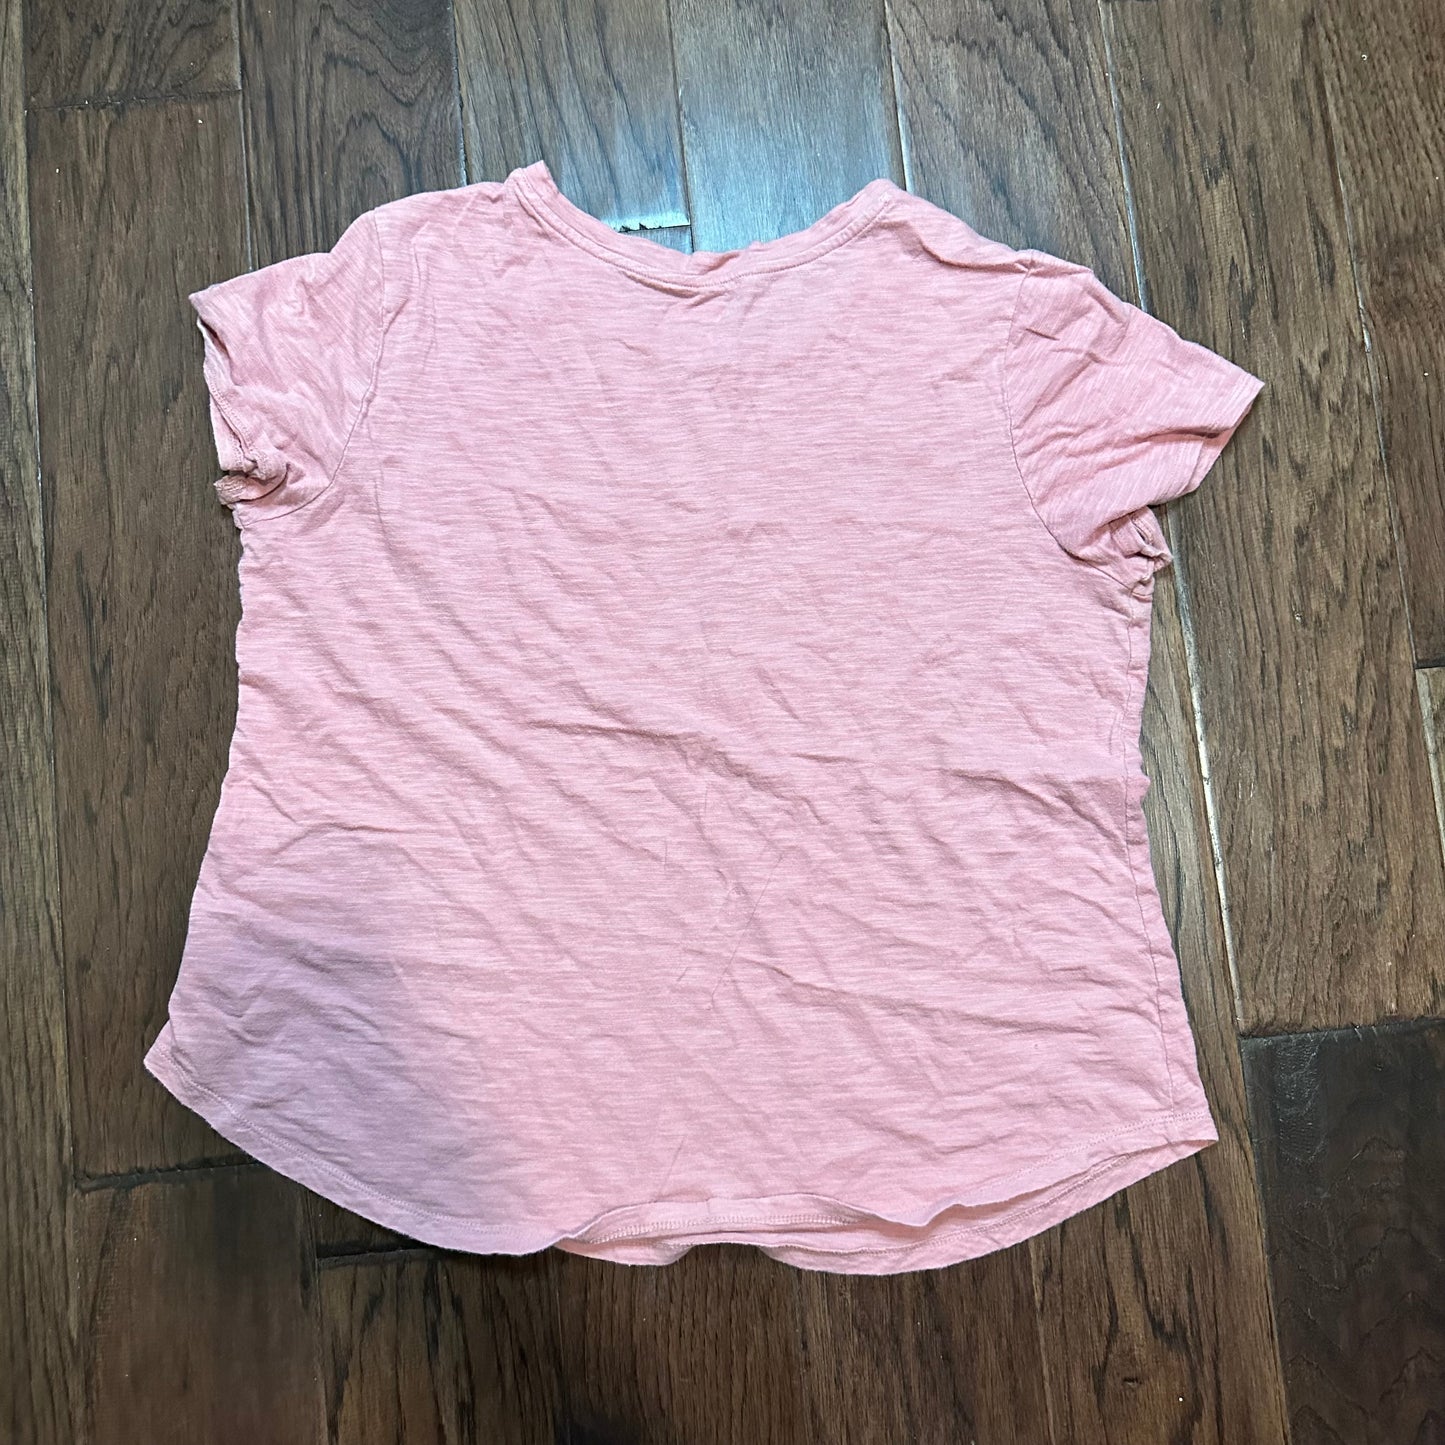 Old Navy Pink Shirt - women’s Large